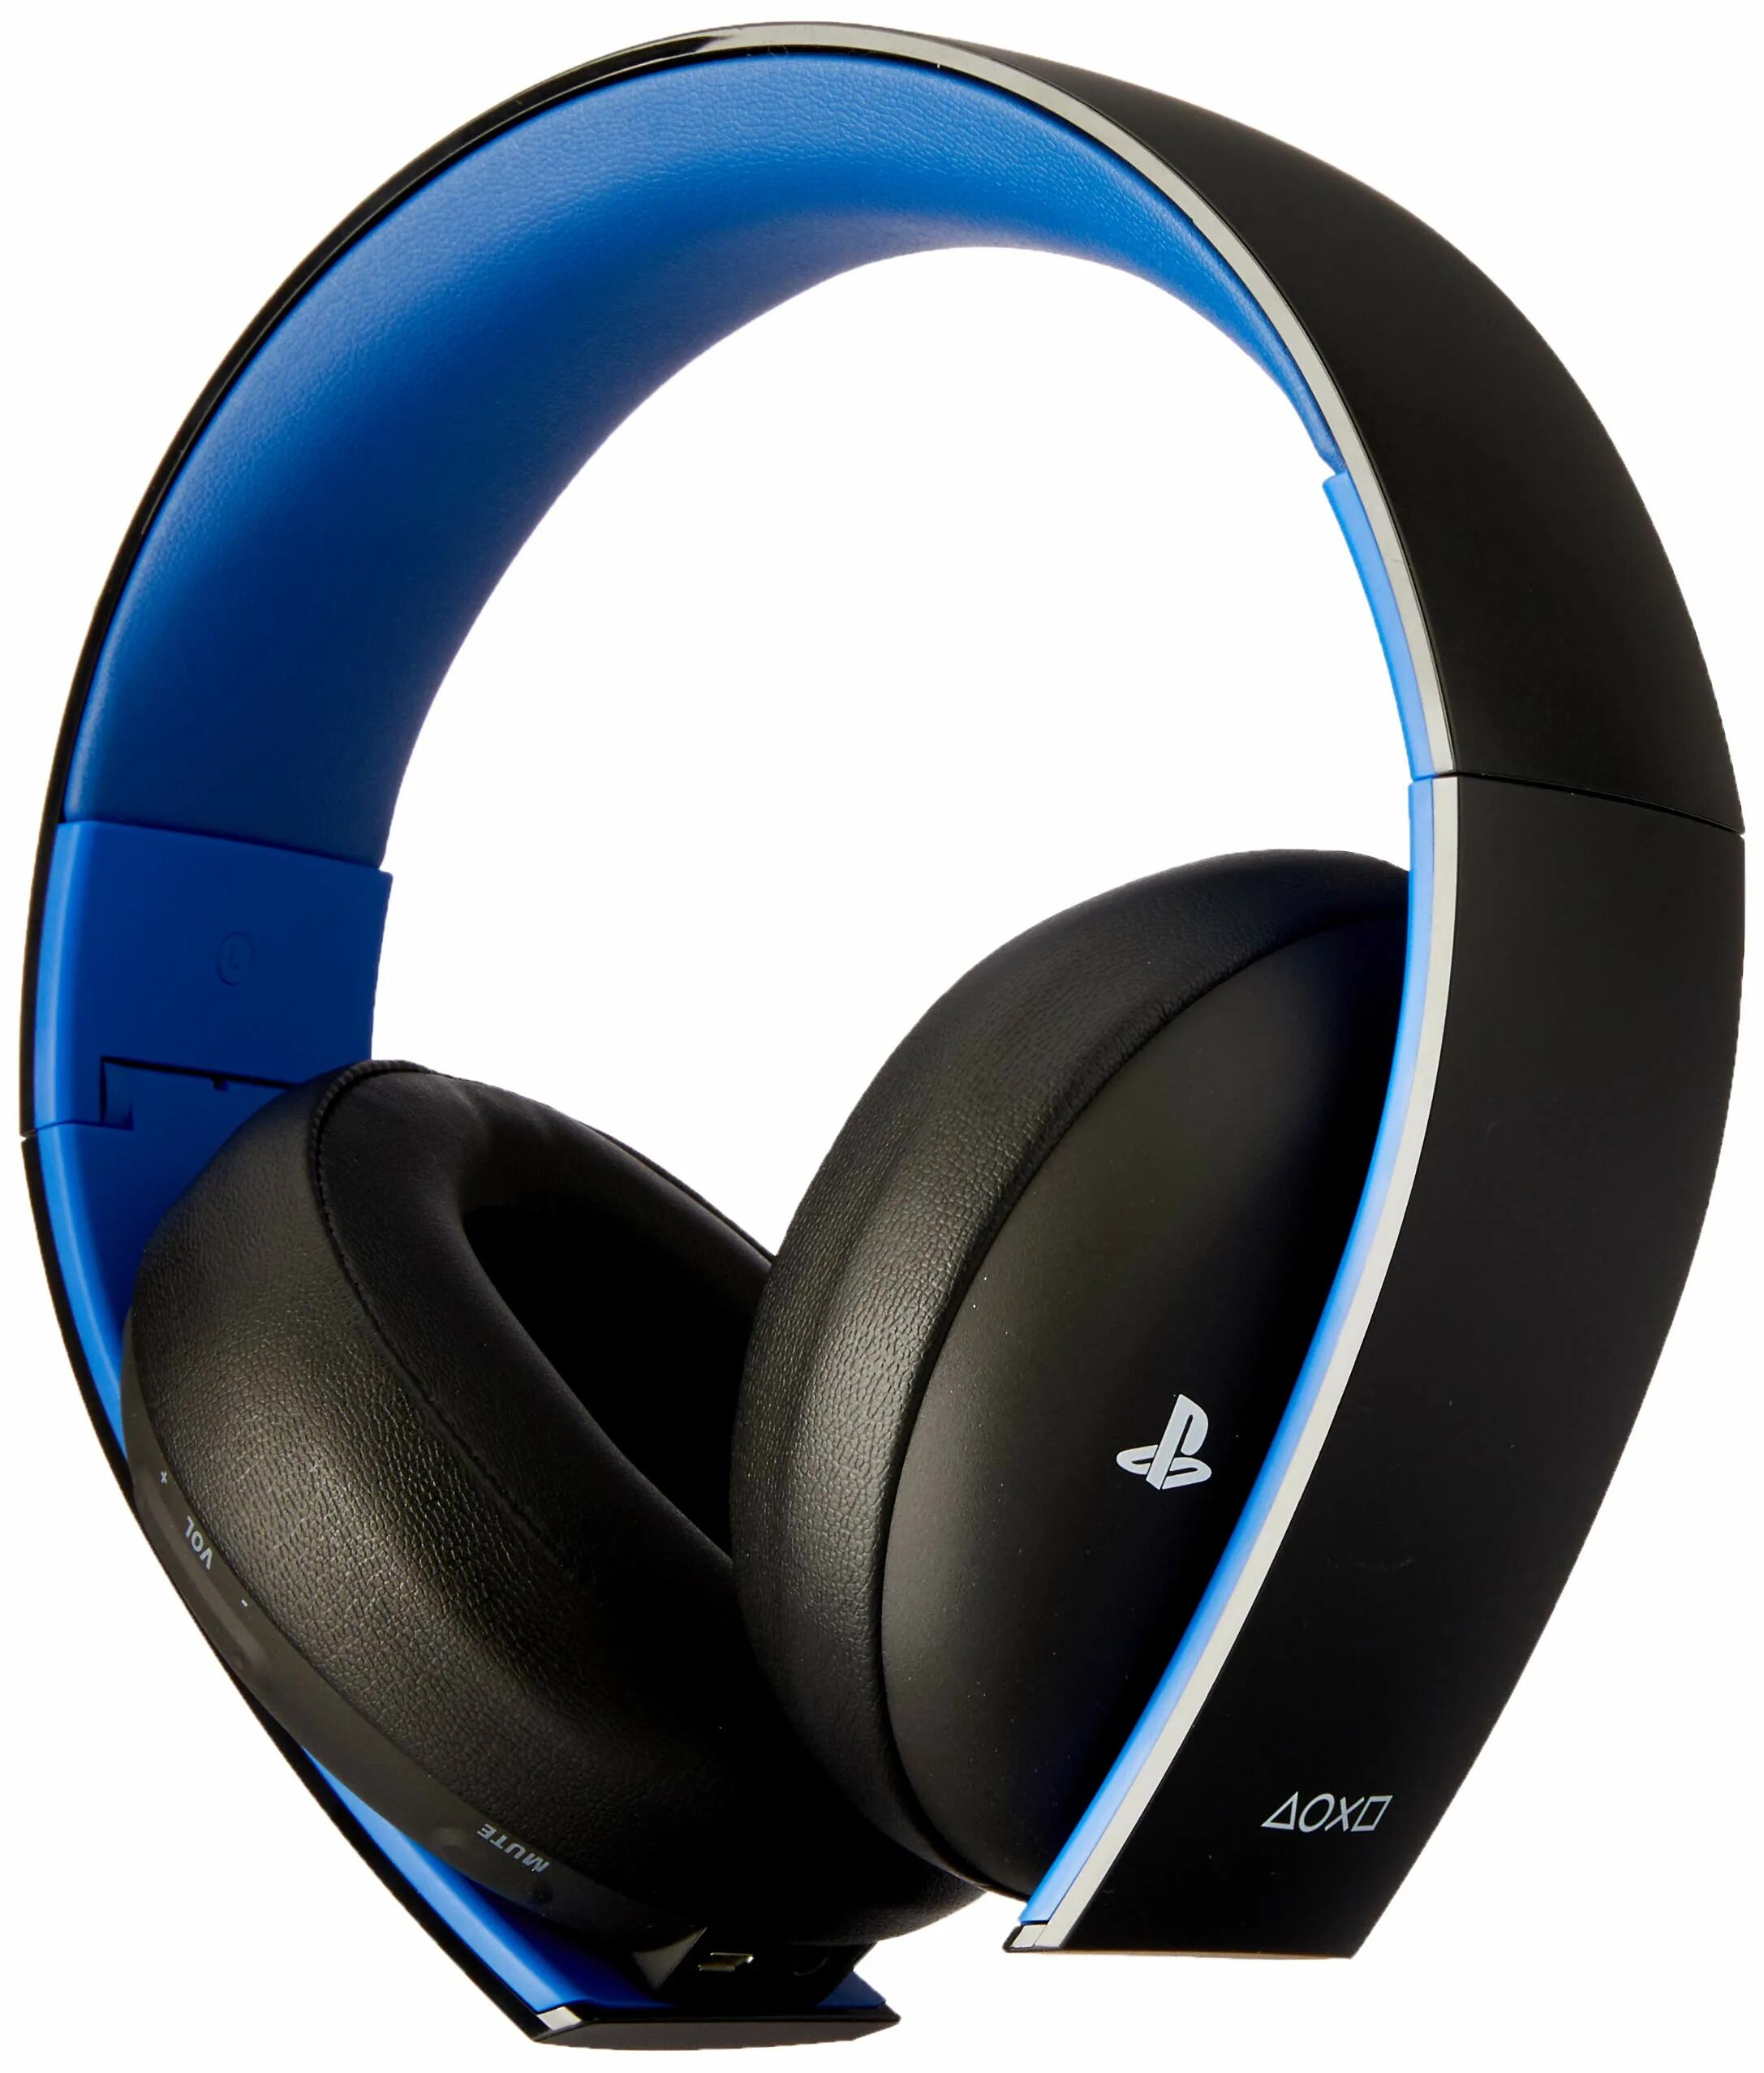 Sony PLAYSTATION Wireless stereo Headset 2.0. Sony ps3 Wireless stereo Headset. Наушники Sony ps3 Wireless stereo Headset. Наушники Sony ps4 Gold Wireless Headset. Наушники sony ps4